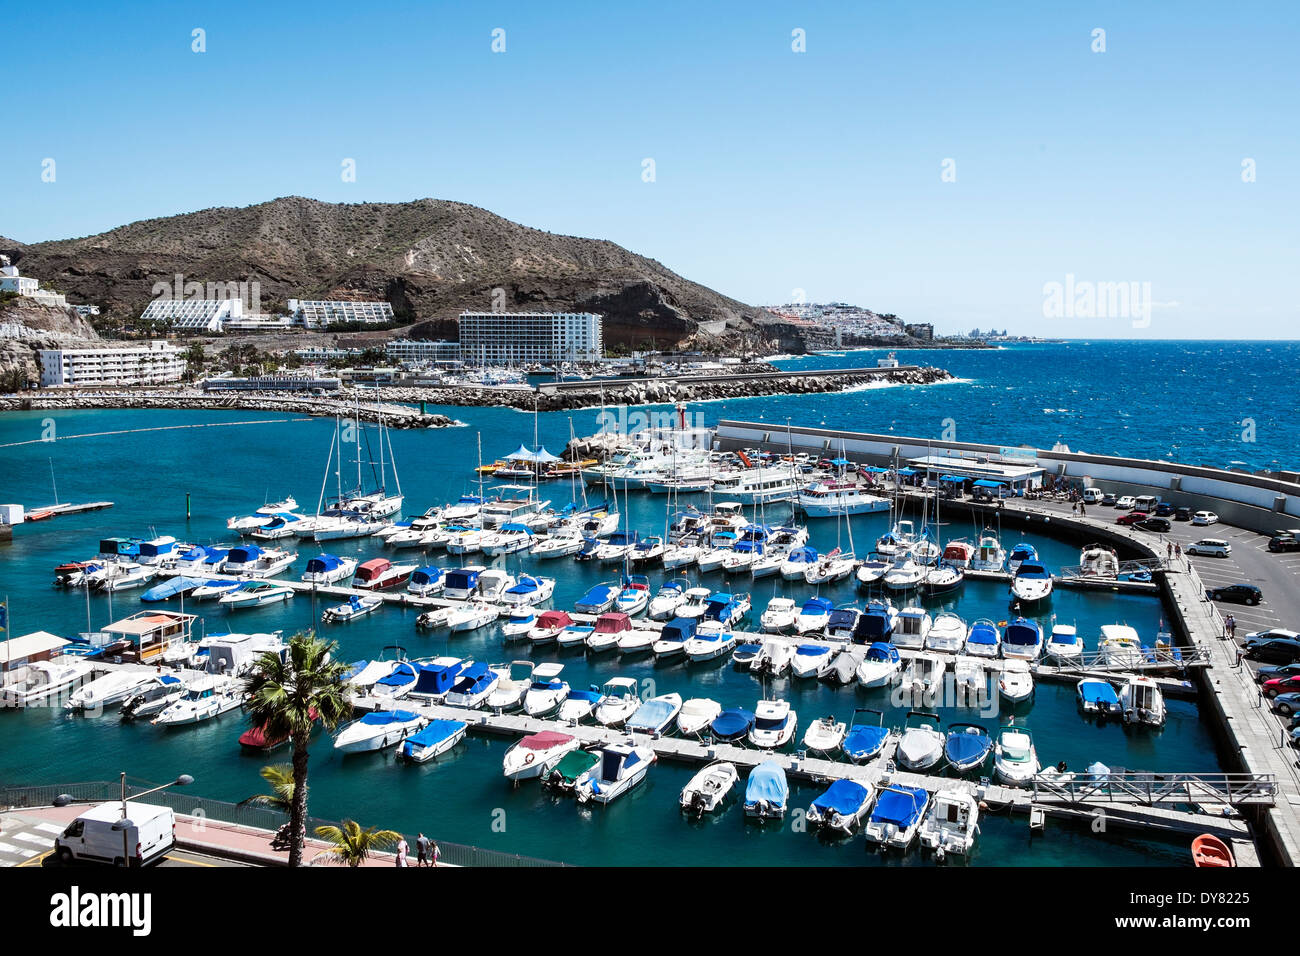 Puerto rico españa fotografías e imágenes de alta resolución - Alamy